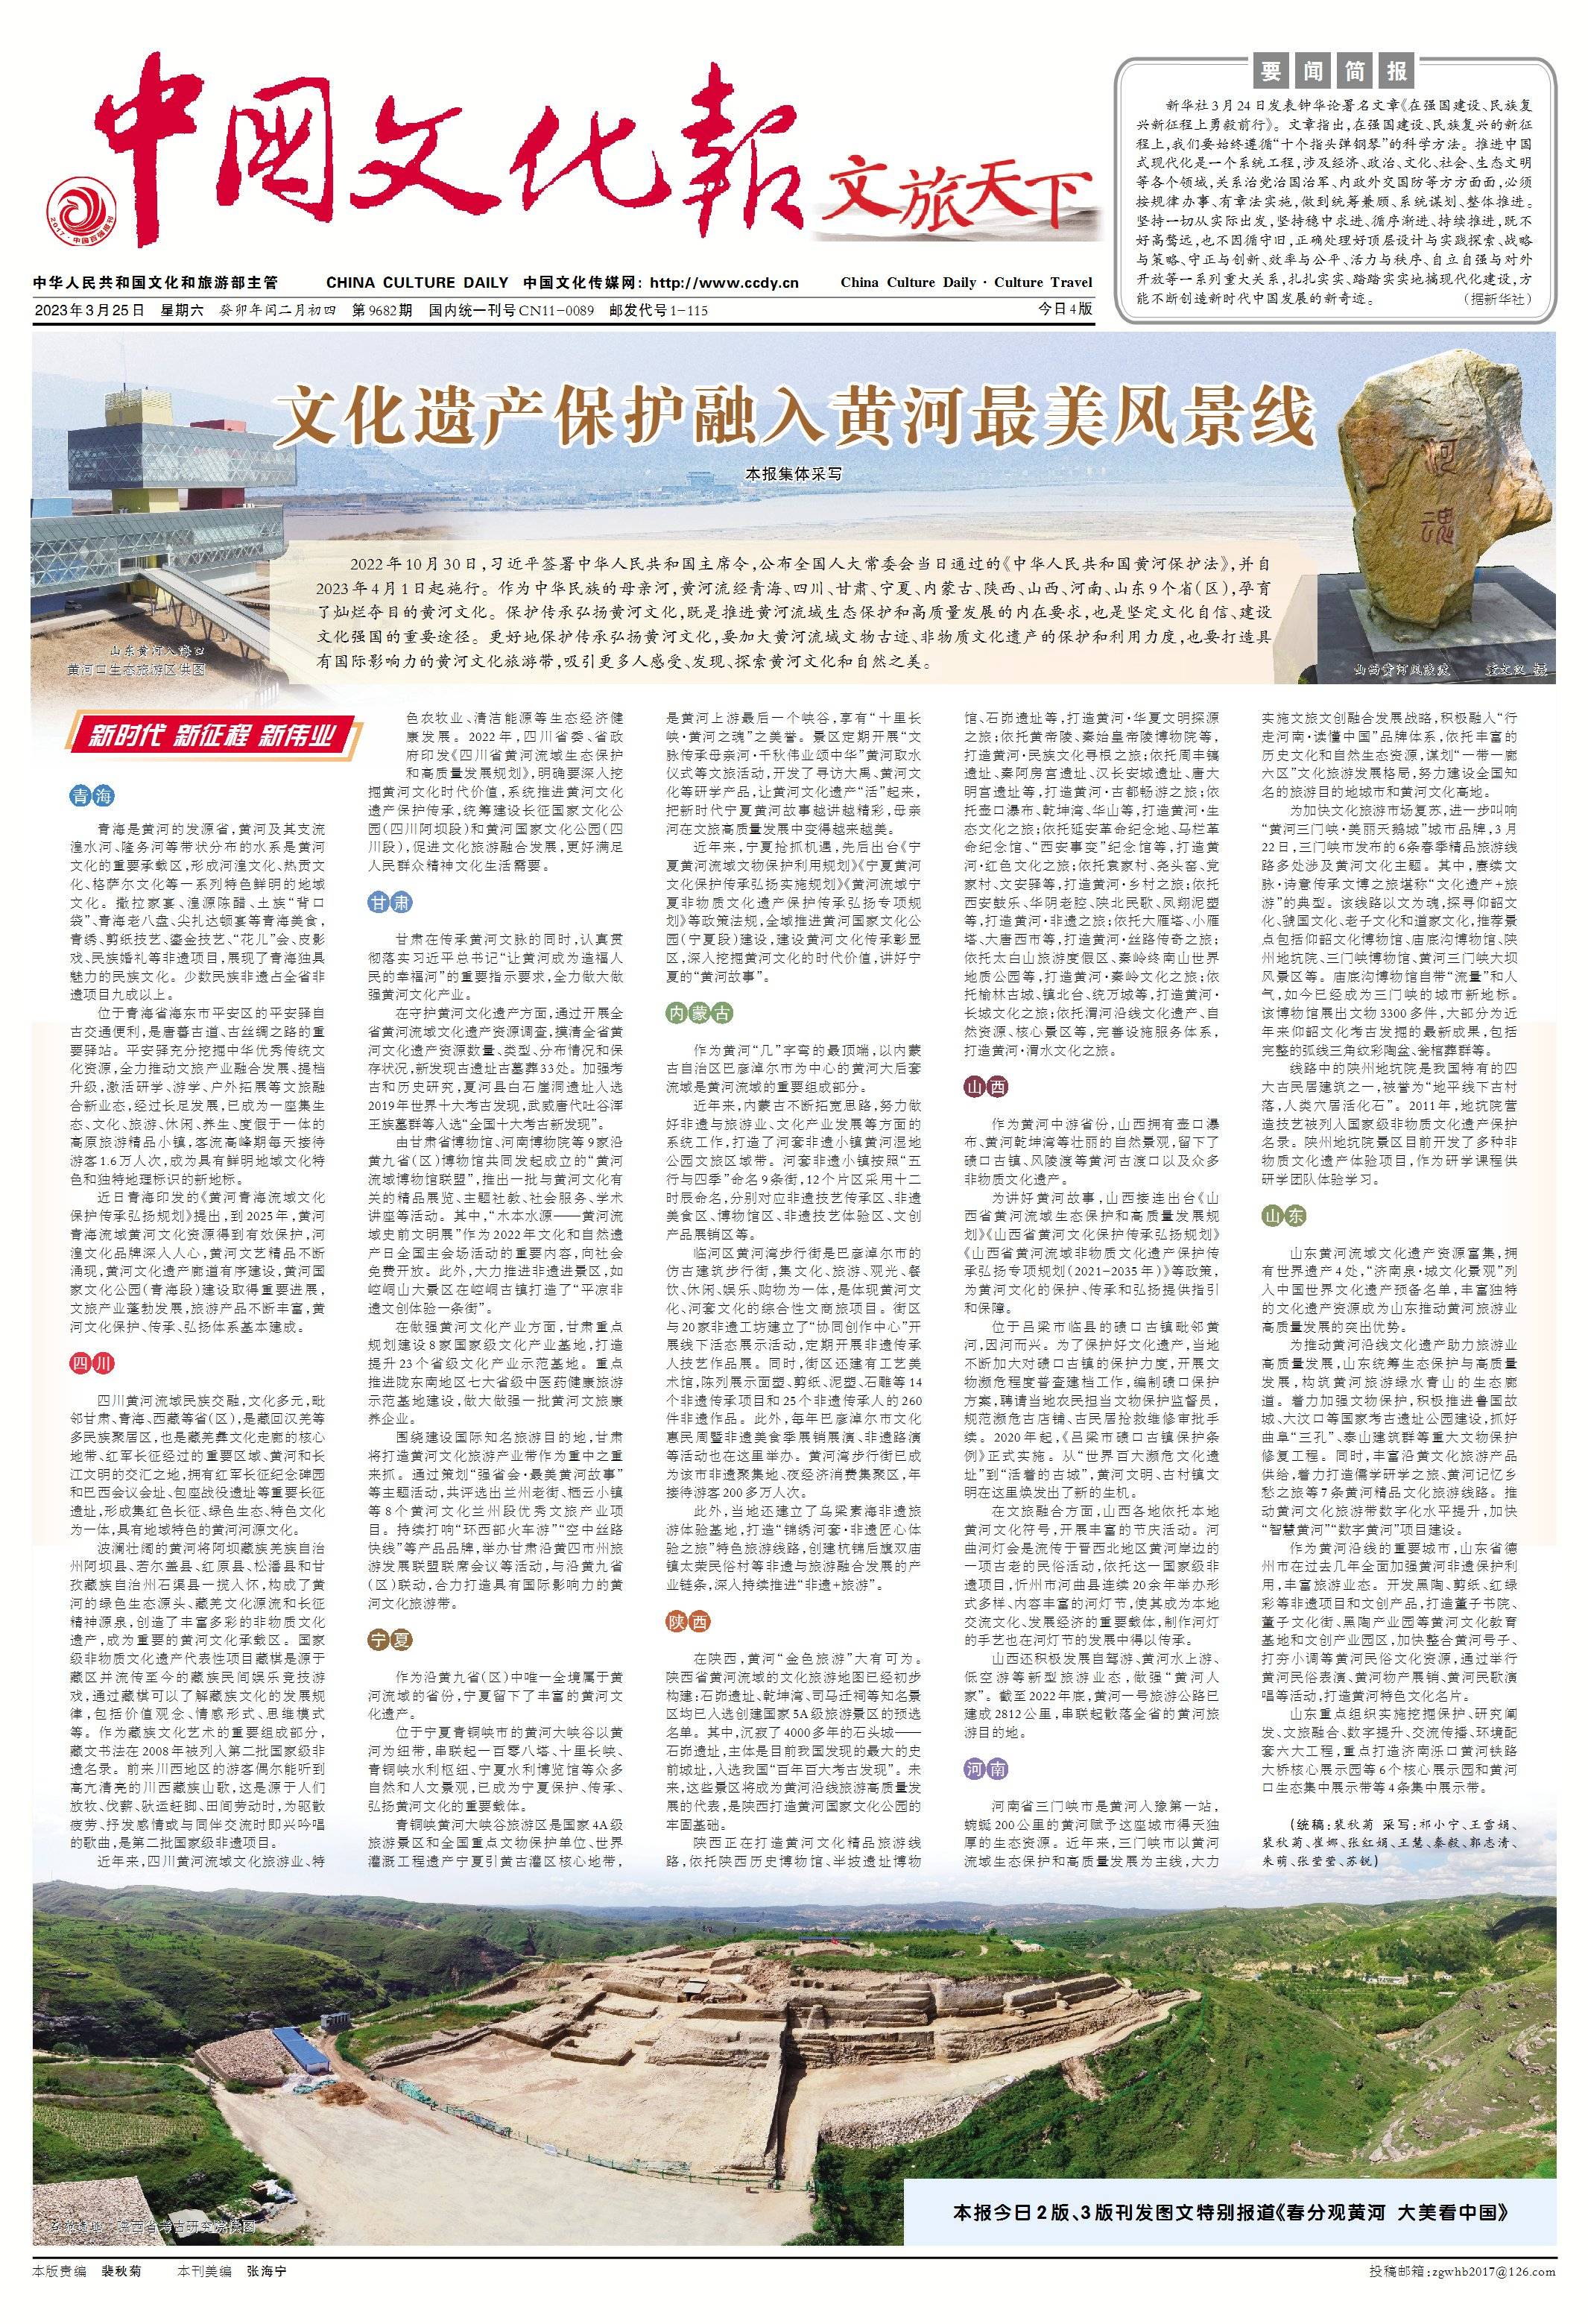 文化遗产保护融入黄河最美风景线